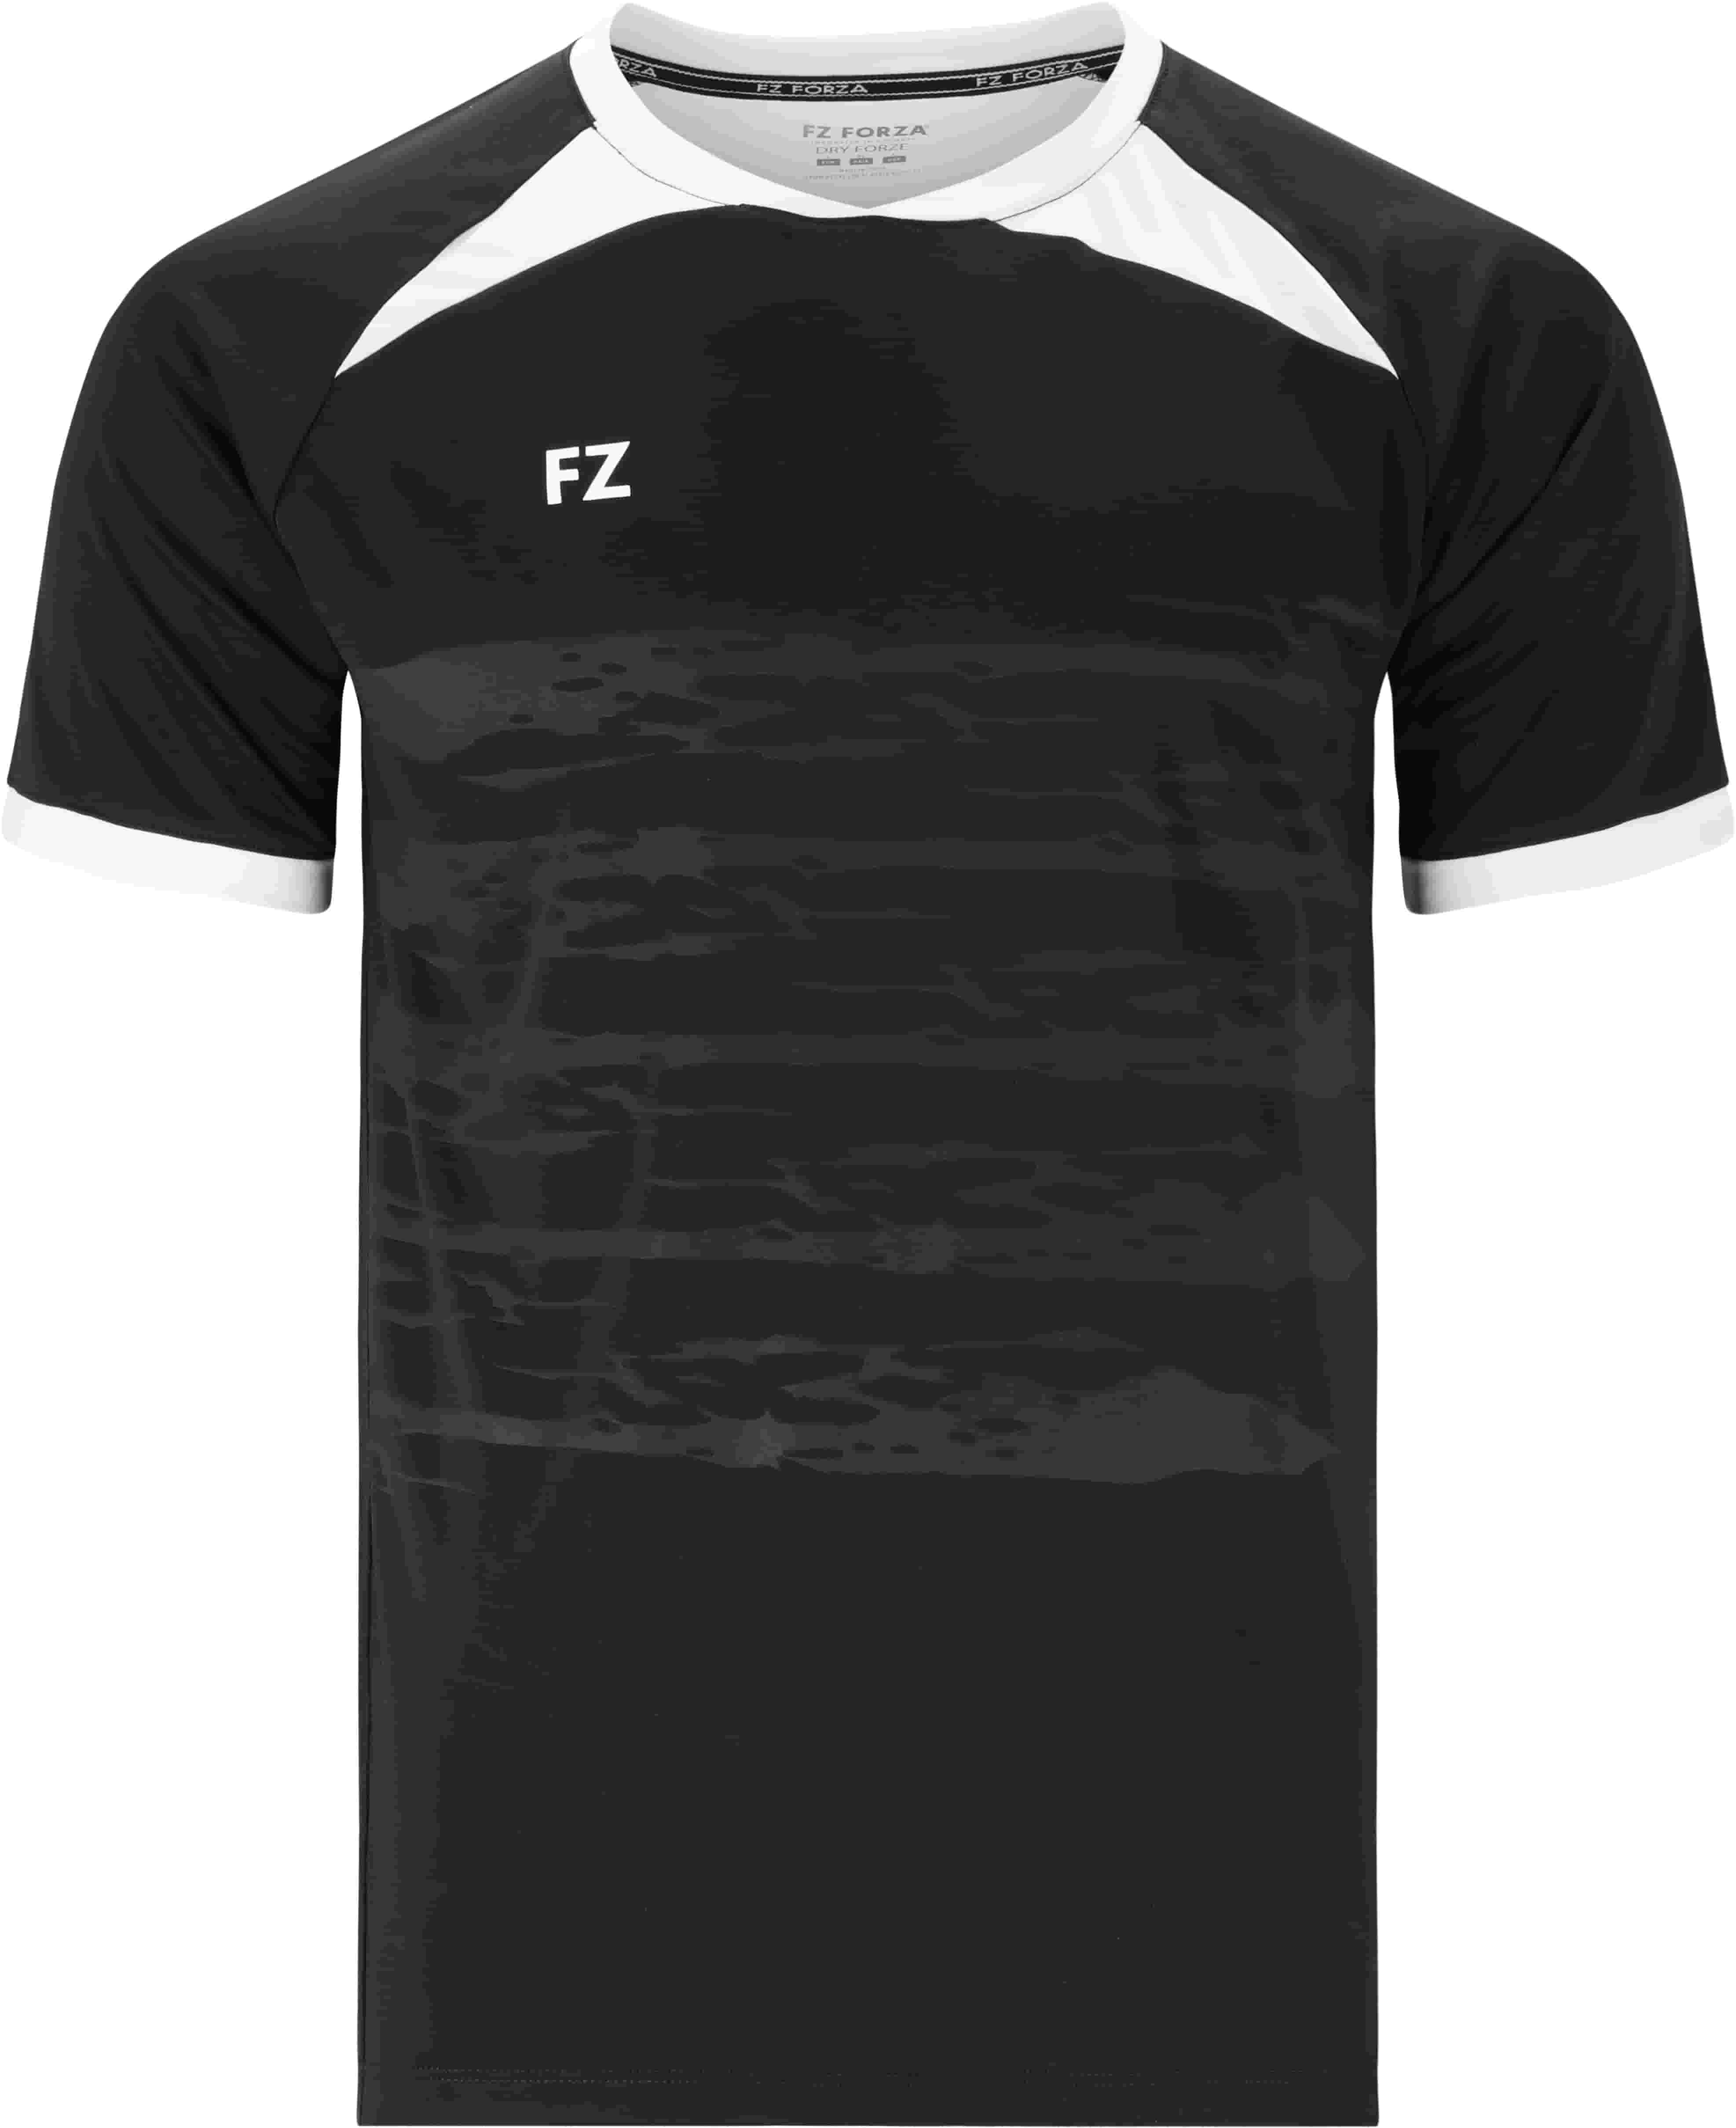 FZ FORZA Agentin M T-Shirt - Schwarz XS